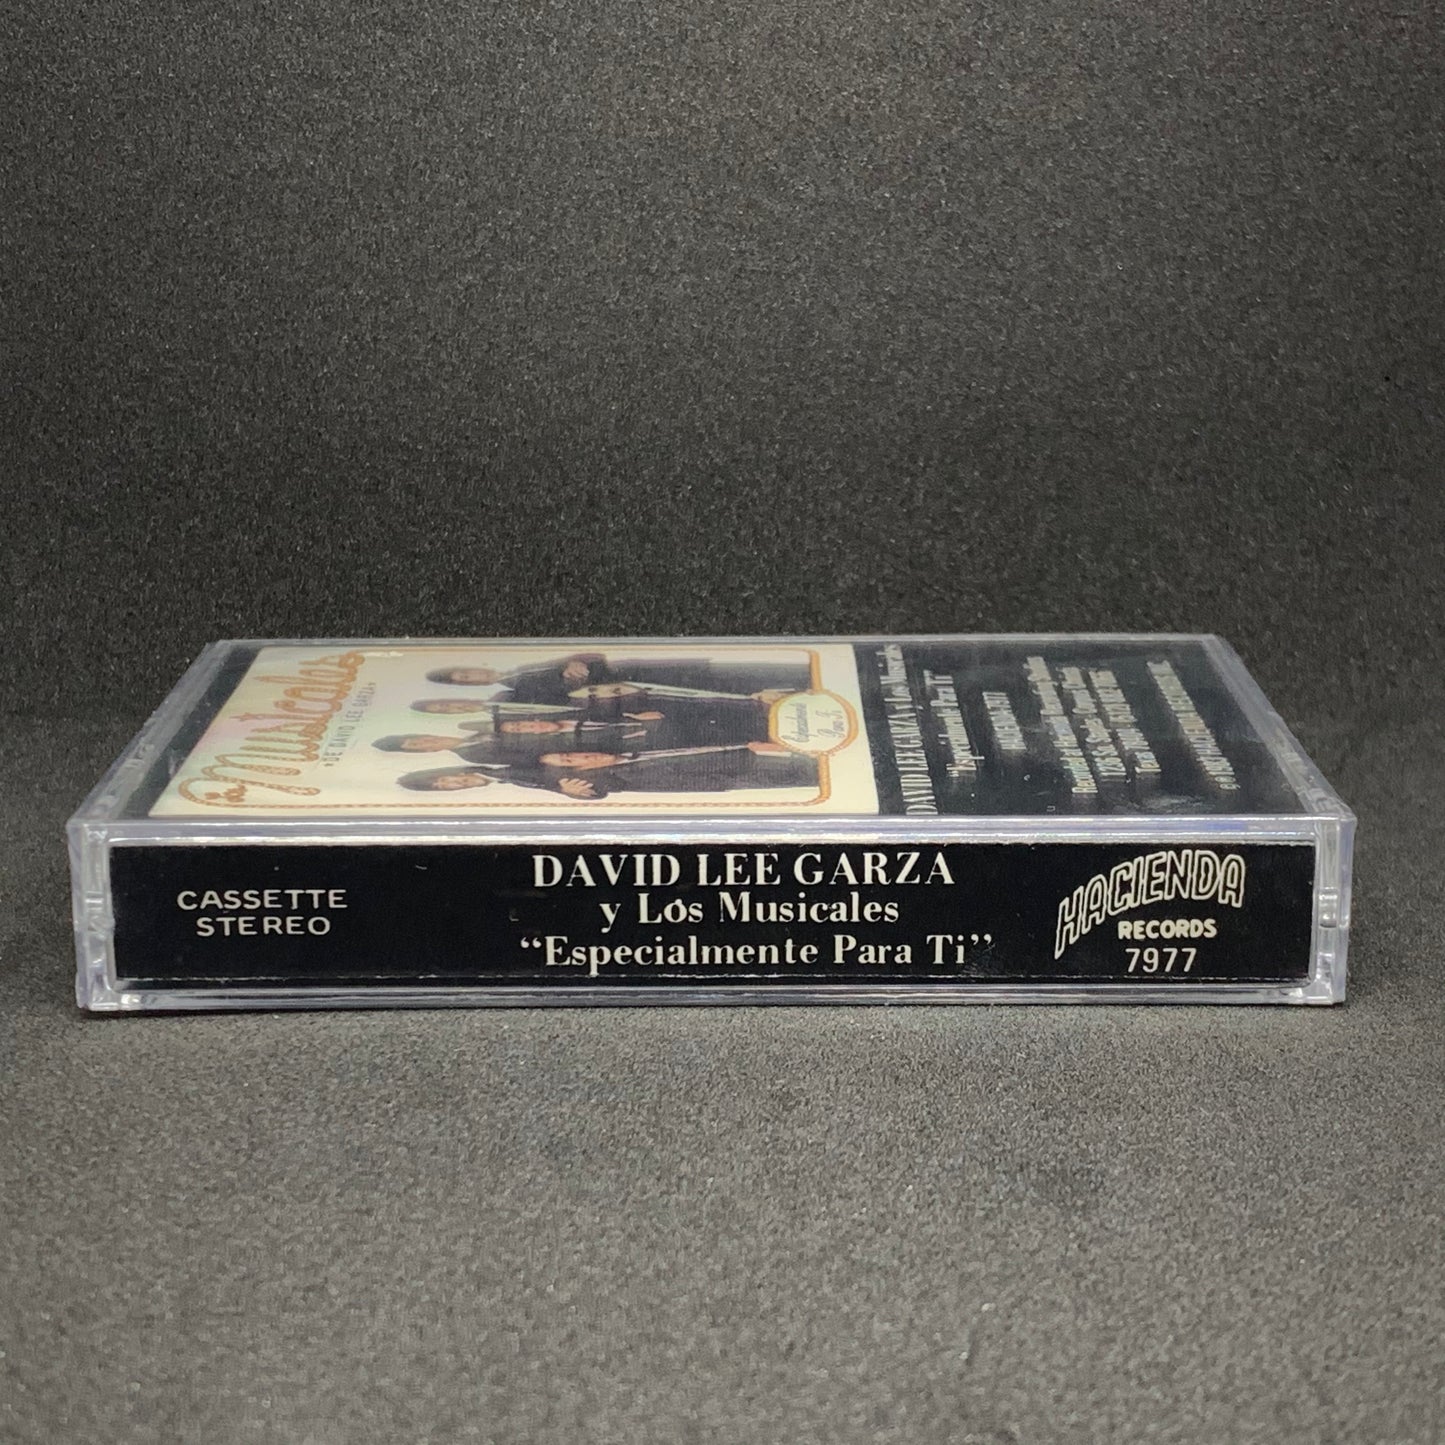 David Lee Garza y Los Musicales - Especialmente Para Ti (Cassette)